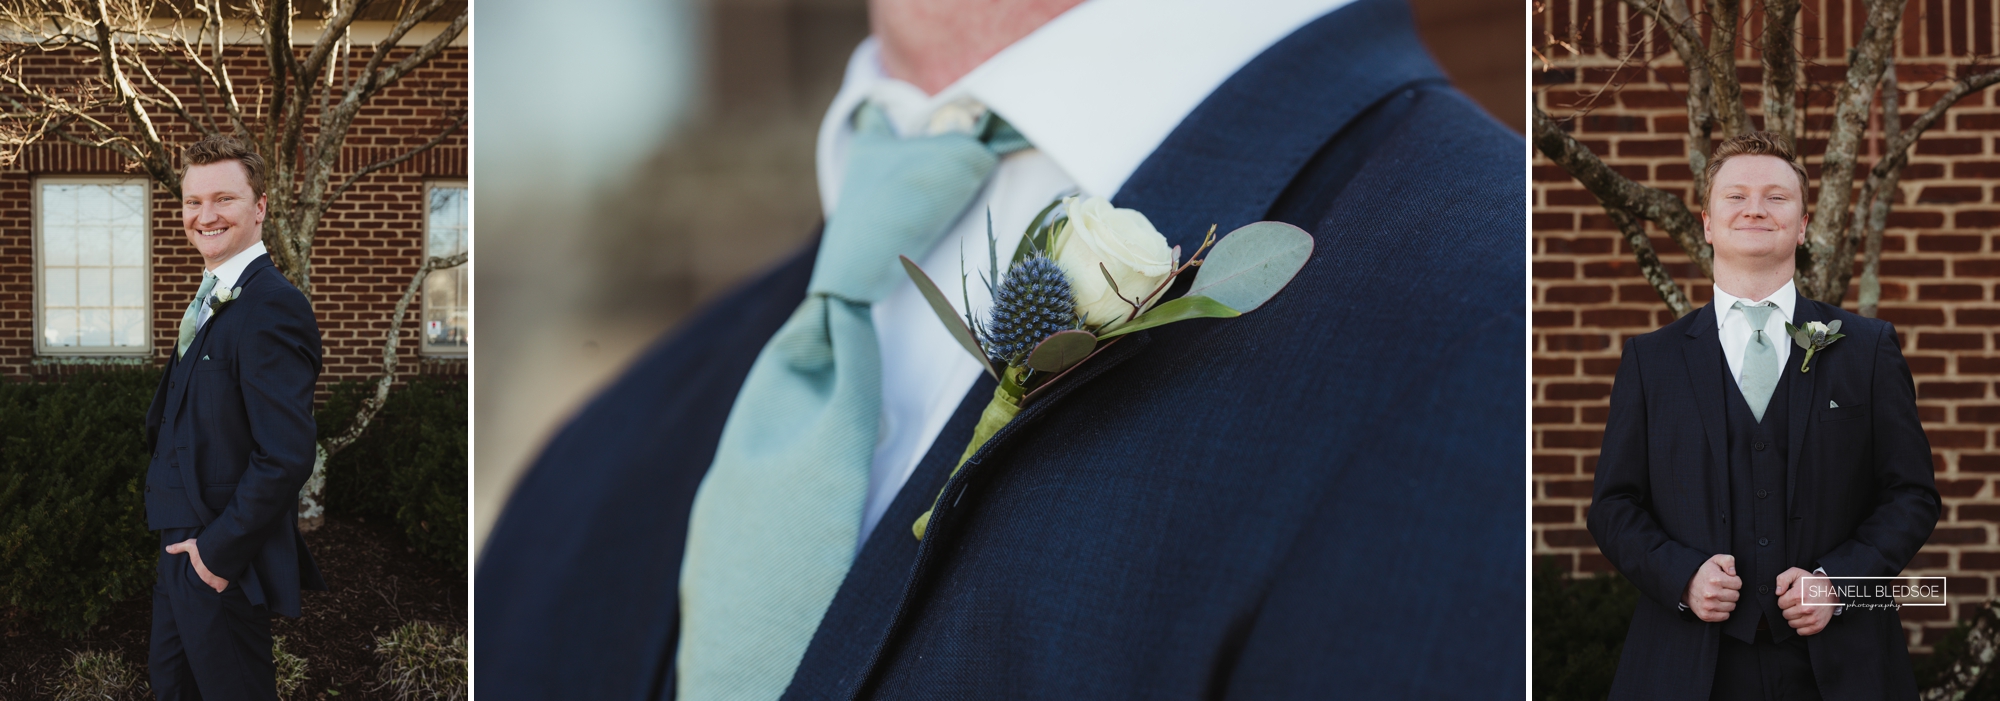 cobalt suit and green tie on groom